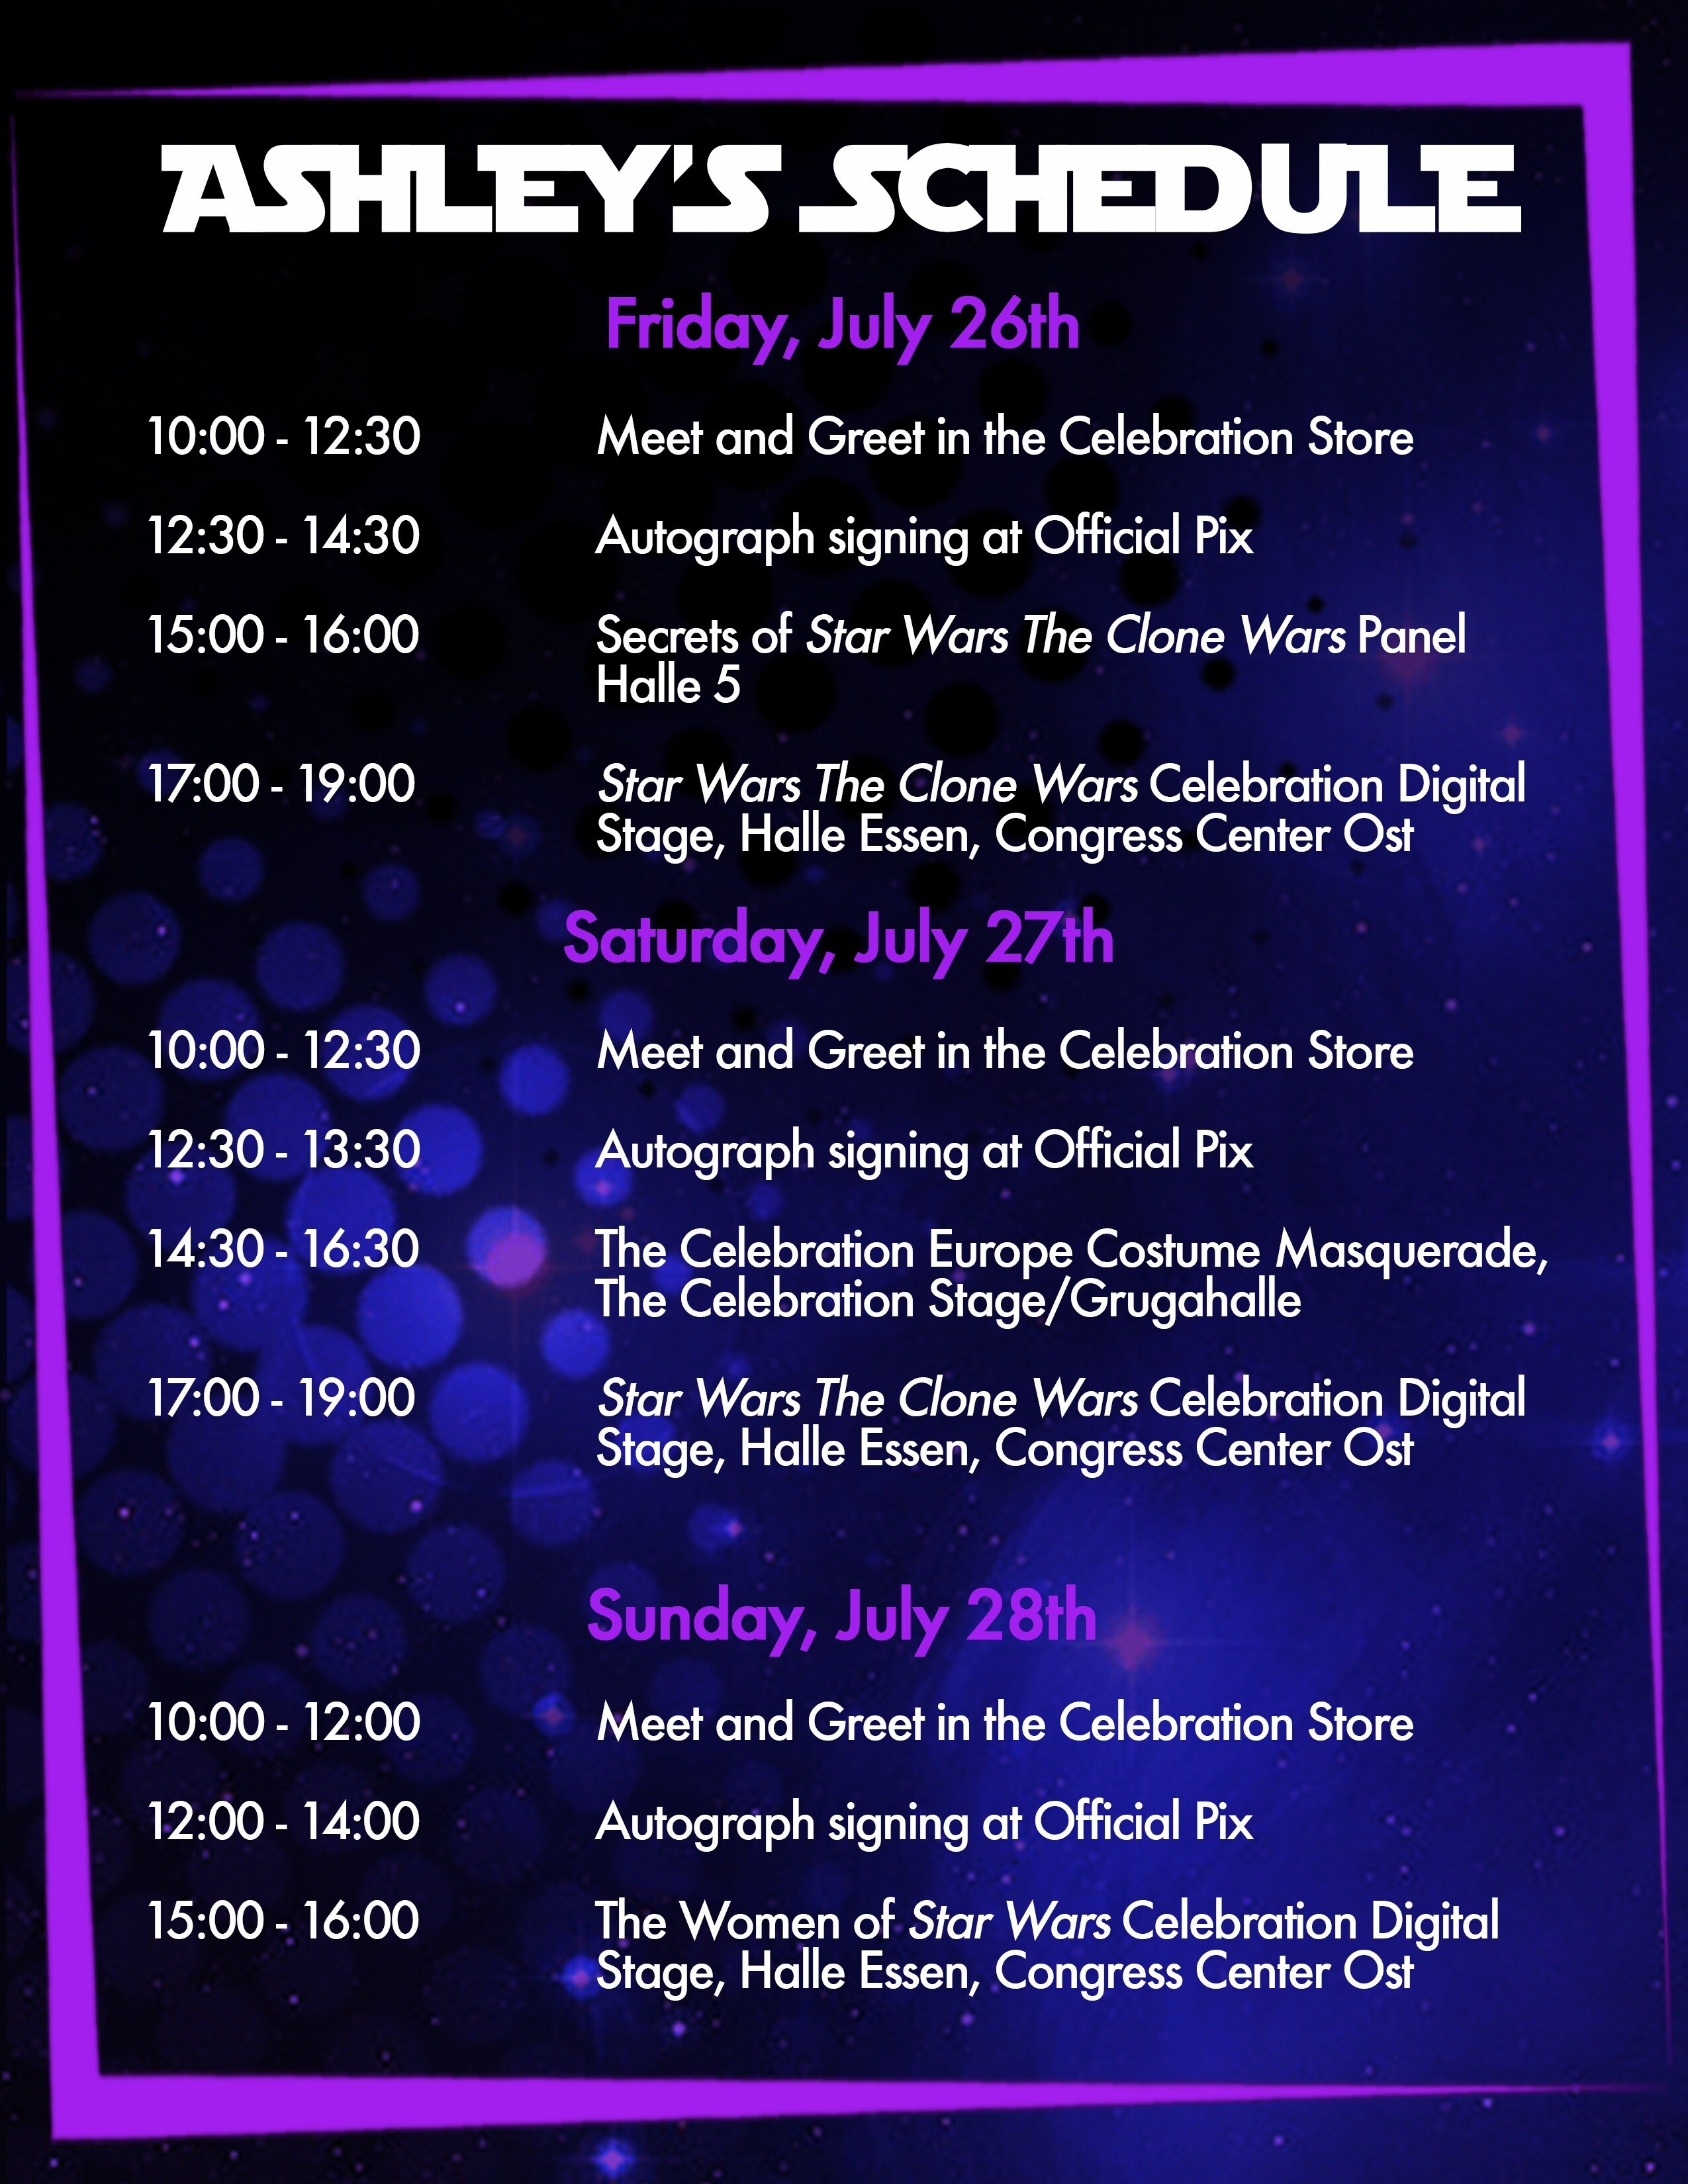 Ashley's Star Wars Celebration Schedule